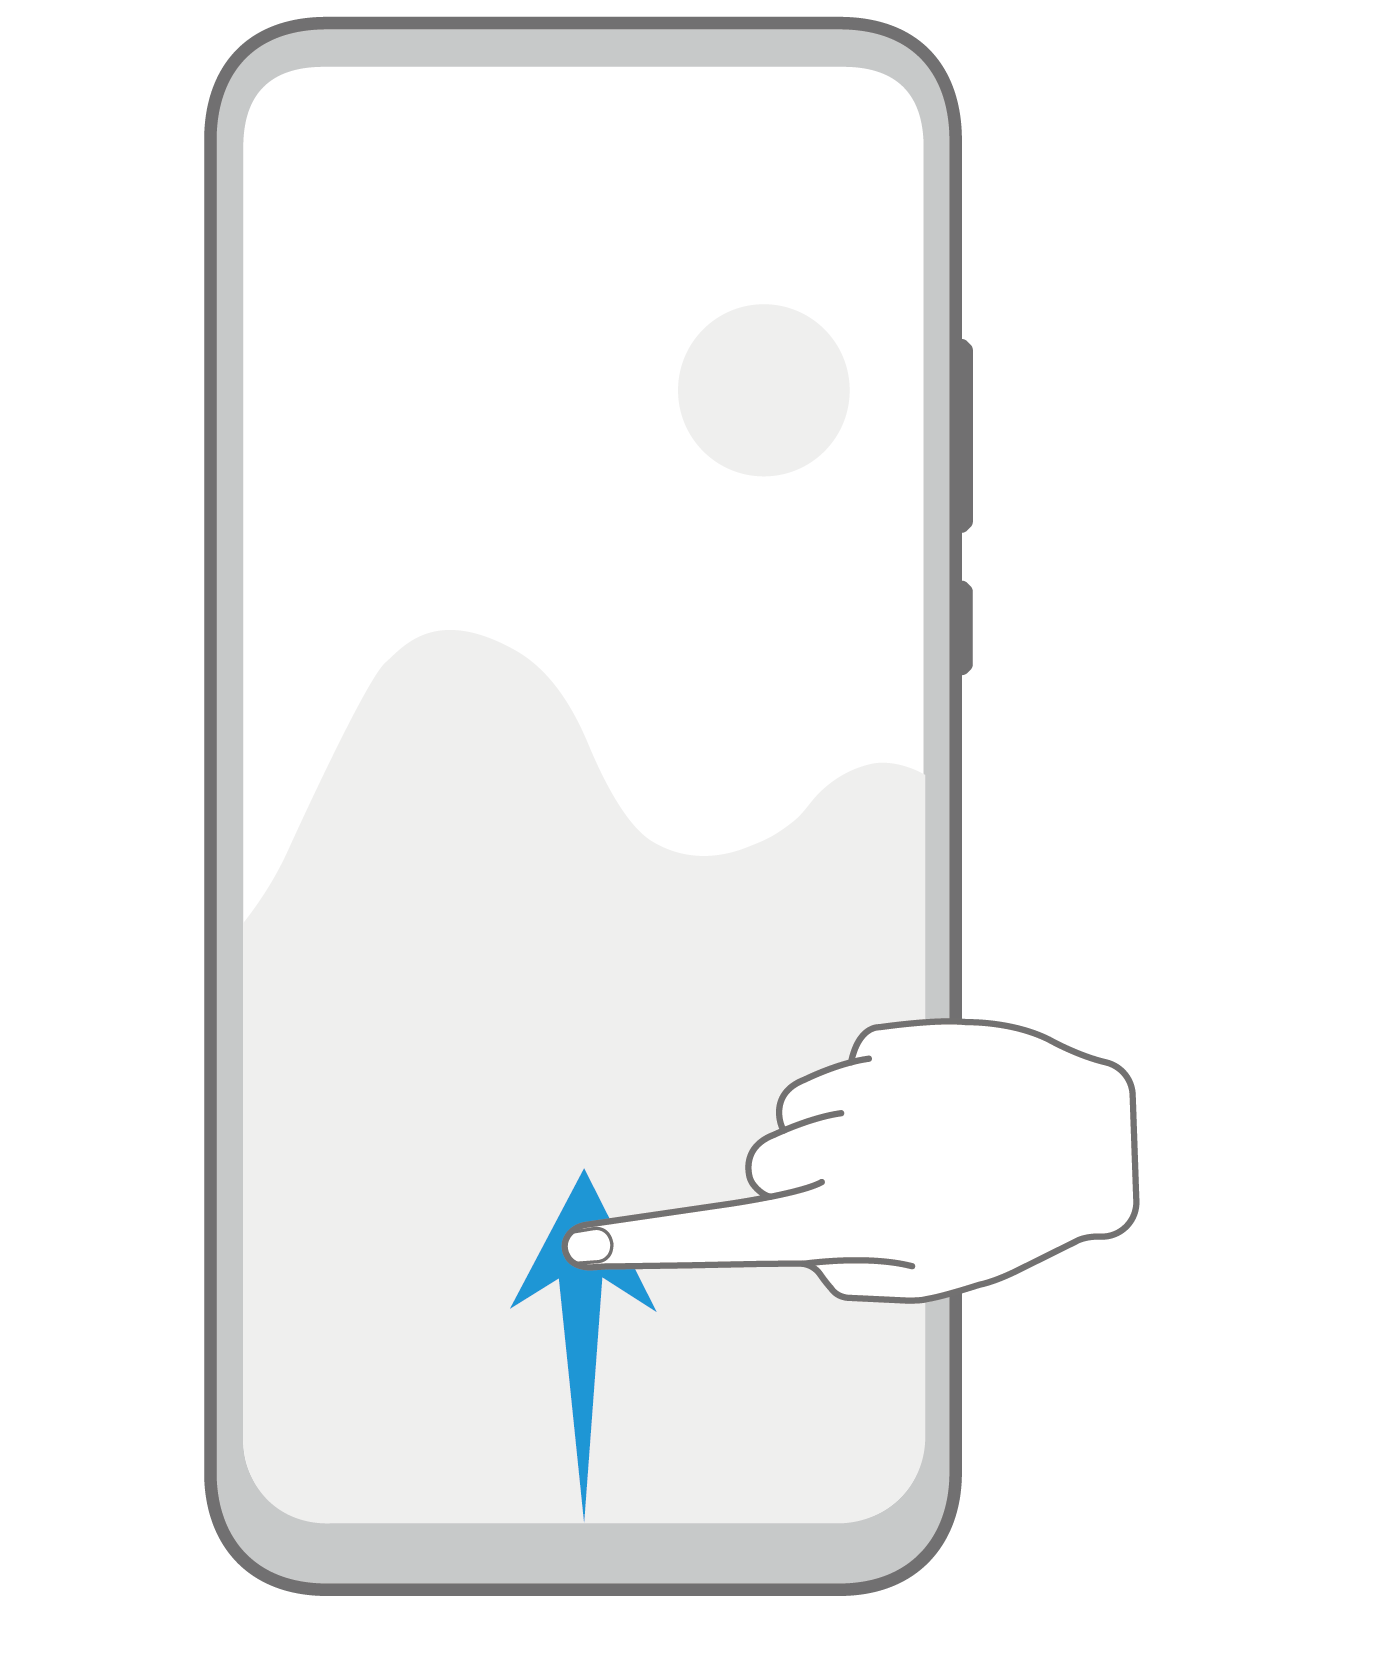 EMUI Display the shortcut panel Gesture